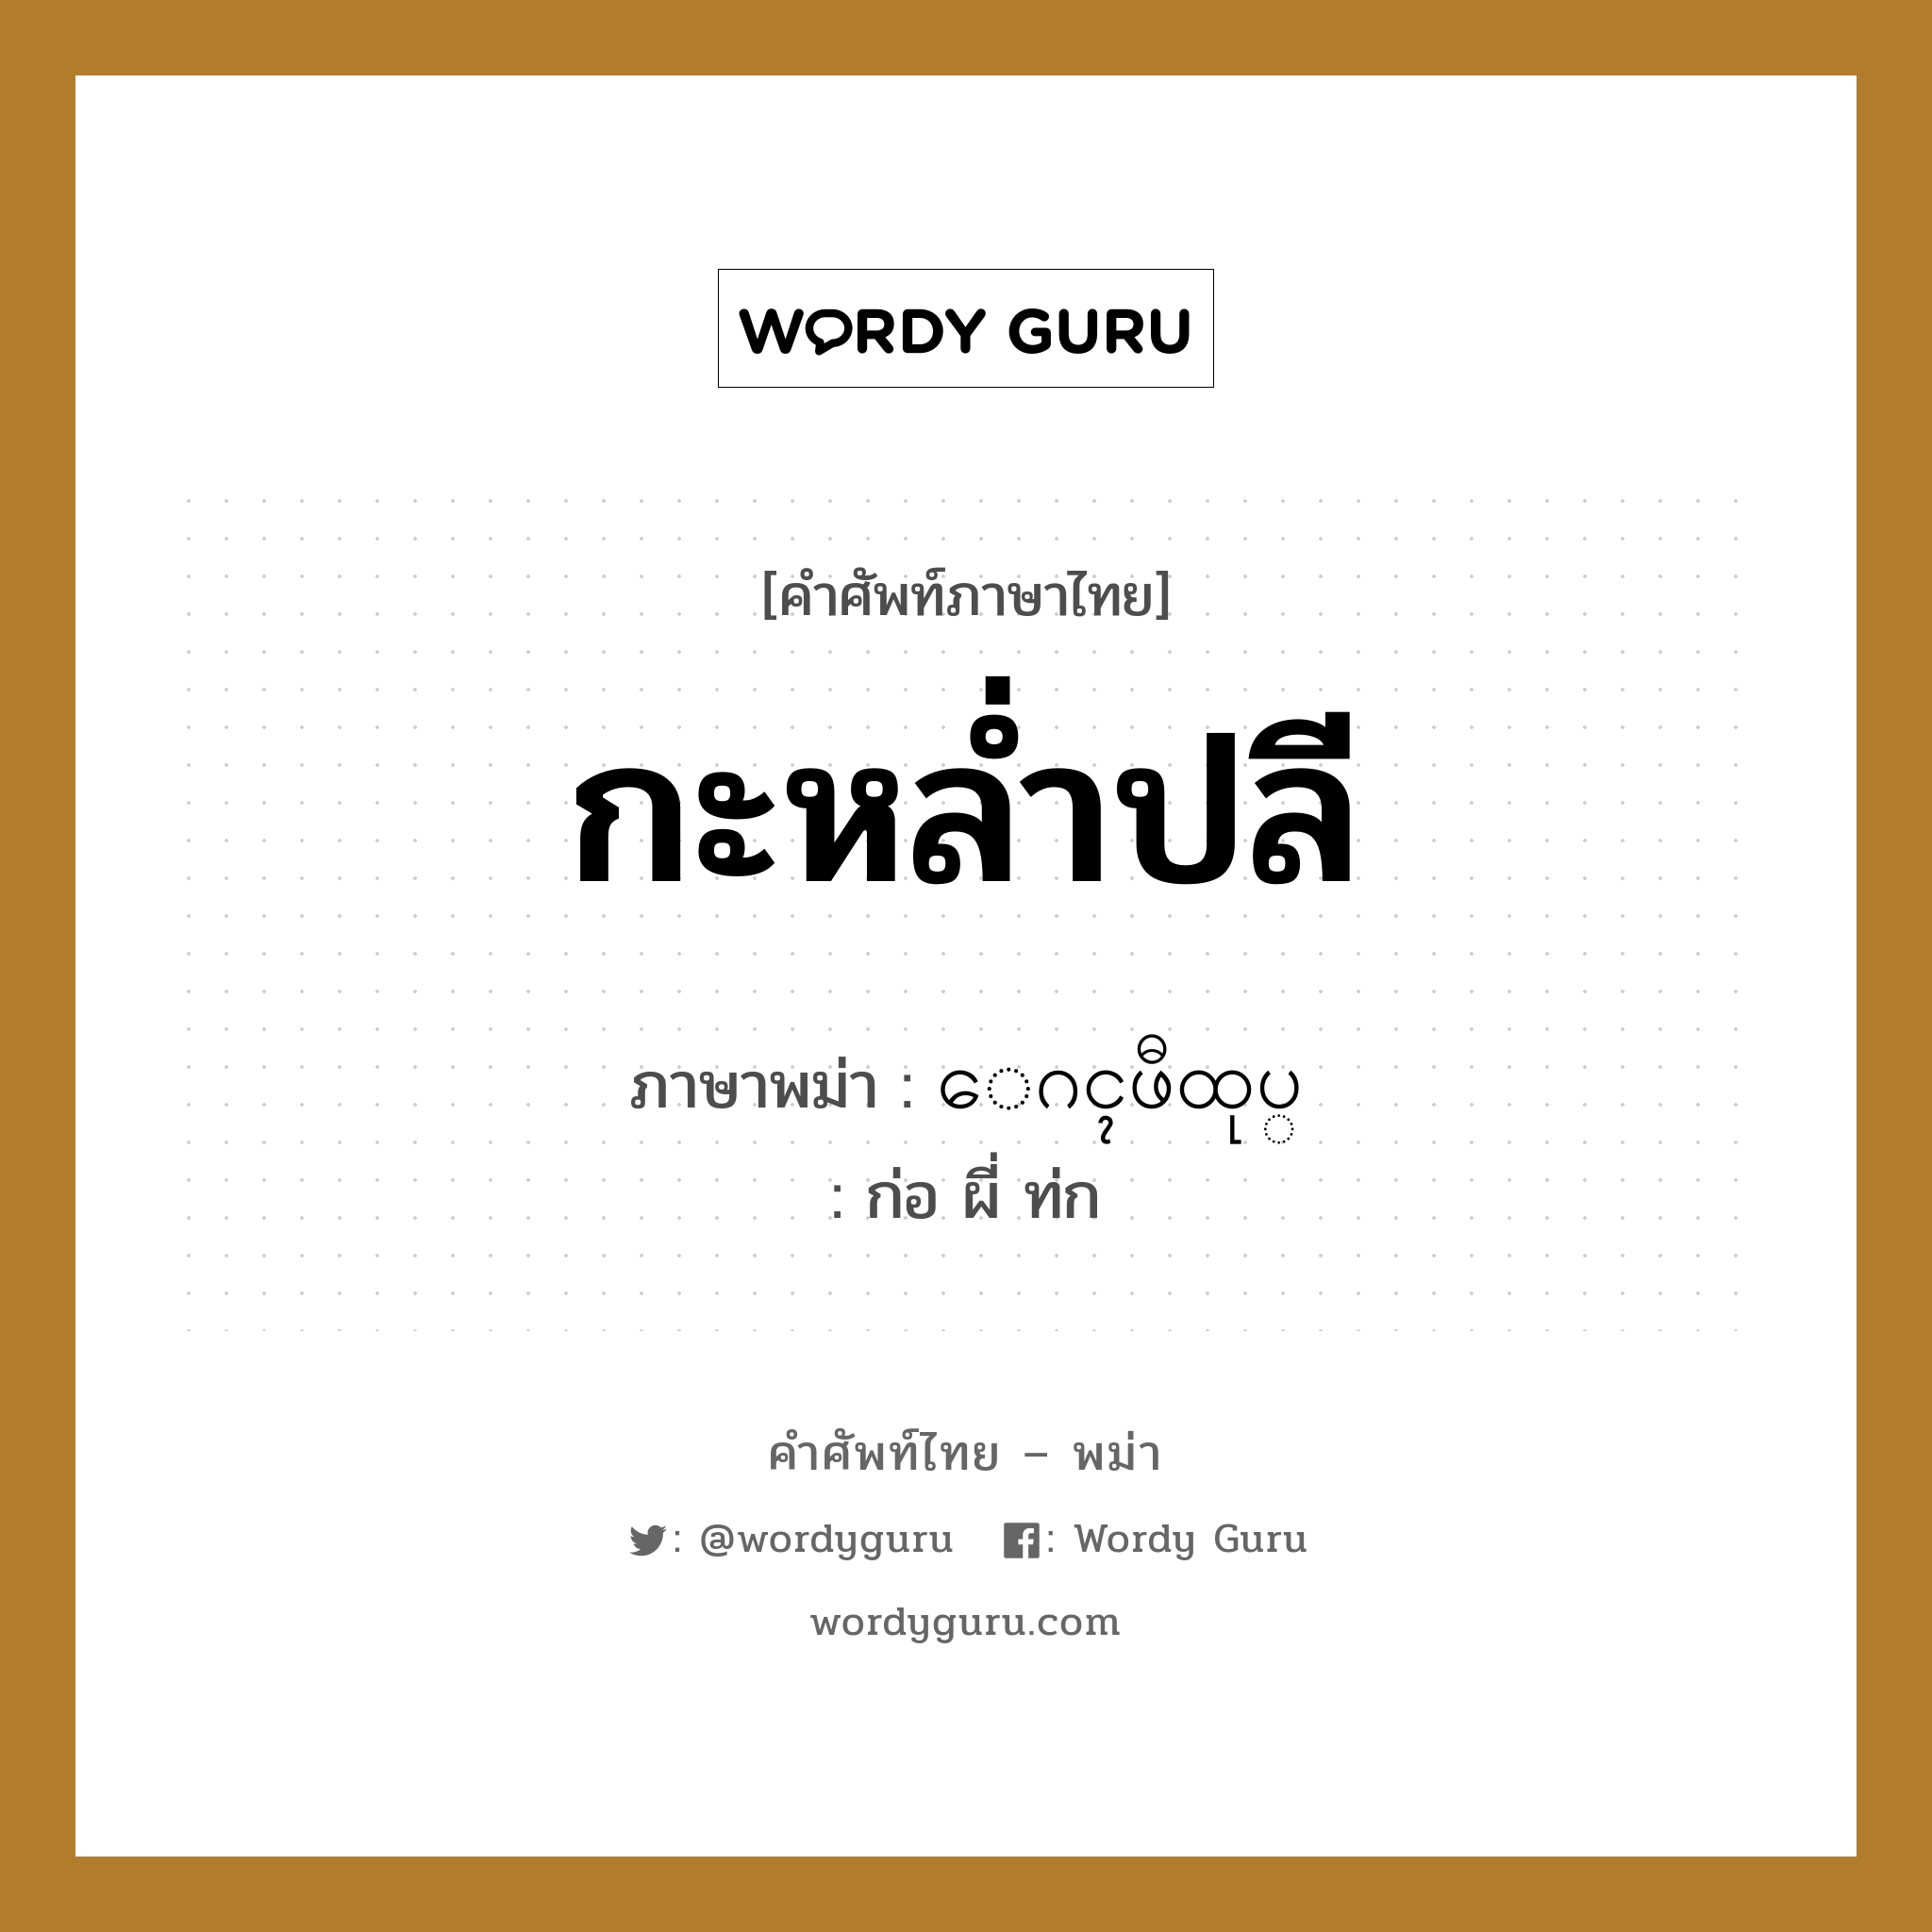 กะหล่ำปลี ภาษาพม่าคืออะไร, คำศัพท์ภาษาไทย - พม่า กะหล่ำปลี ภาษาพม่า ေဂၚဖီထုပ္ หมวด ผักและผลไม้ ก่อ ผี่ ท่ก หมวด ผักและผลไม้